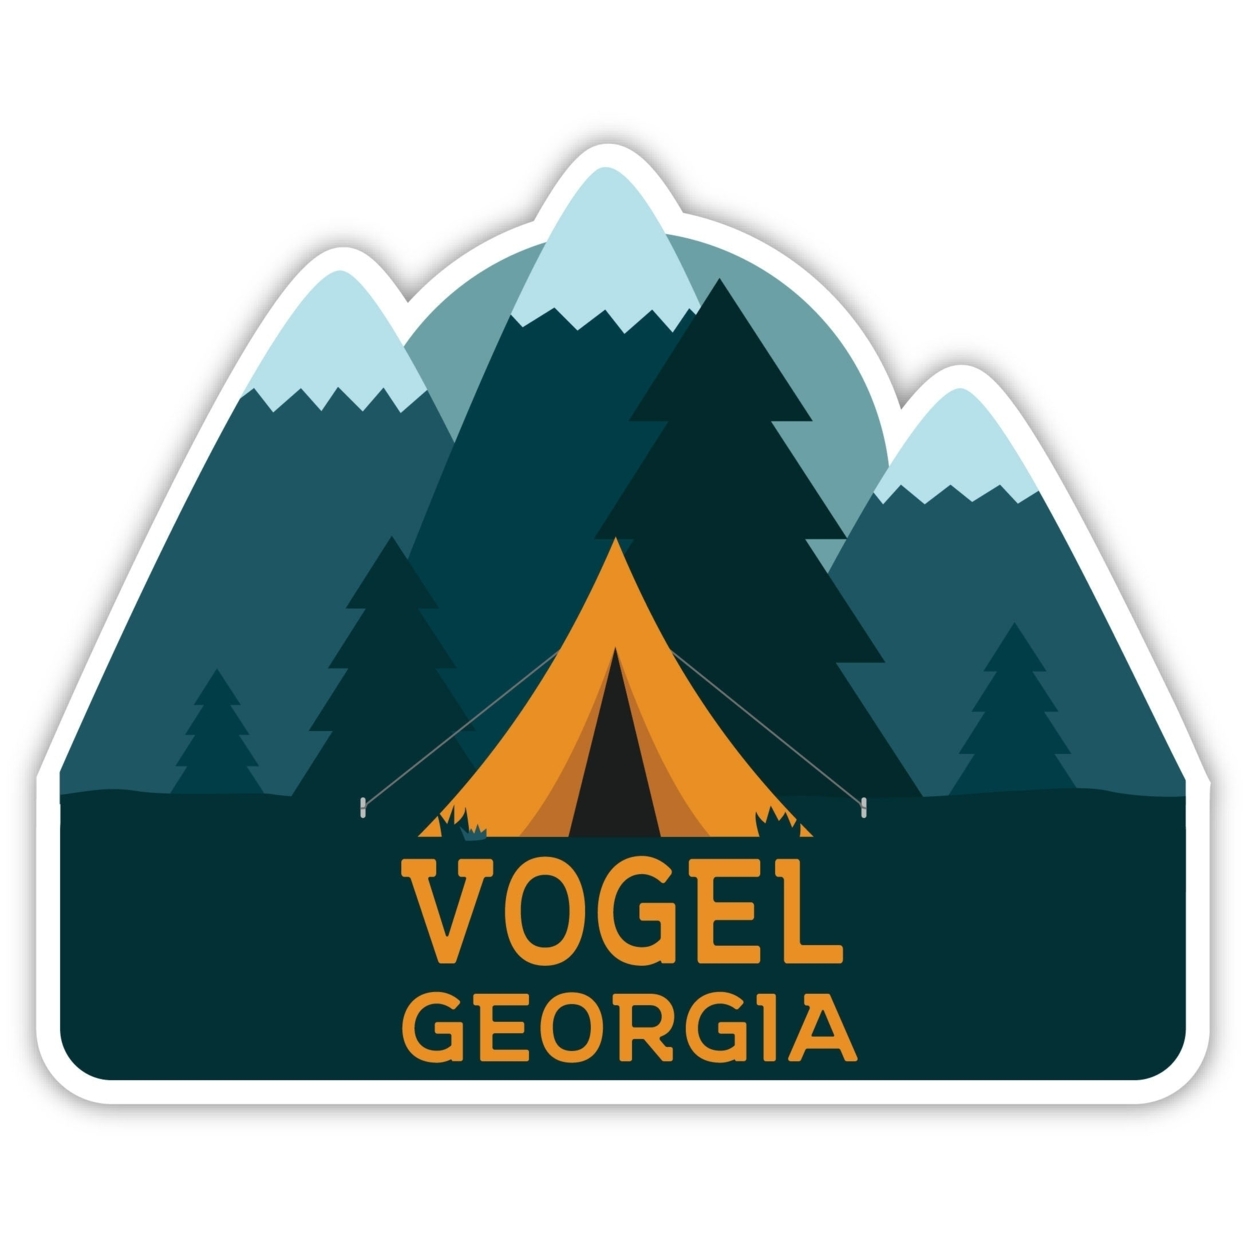 Vogel Georgia Souvenir Decorative Stickers (Choose Theme And Size) - Single Unit, 2-Inch, Tent